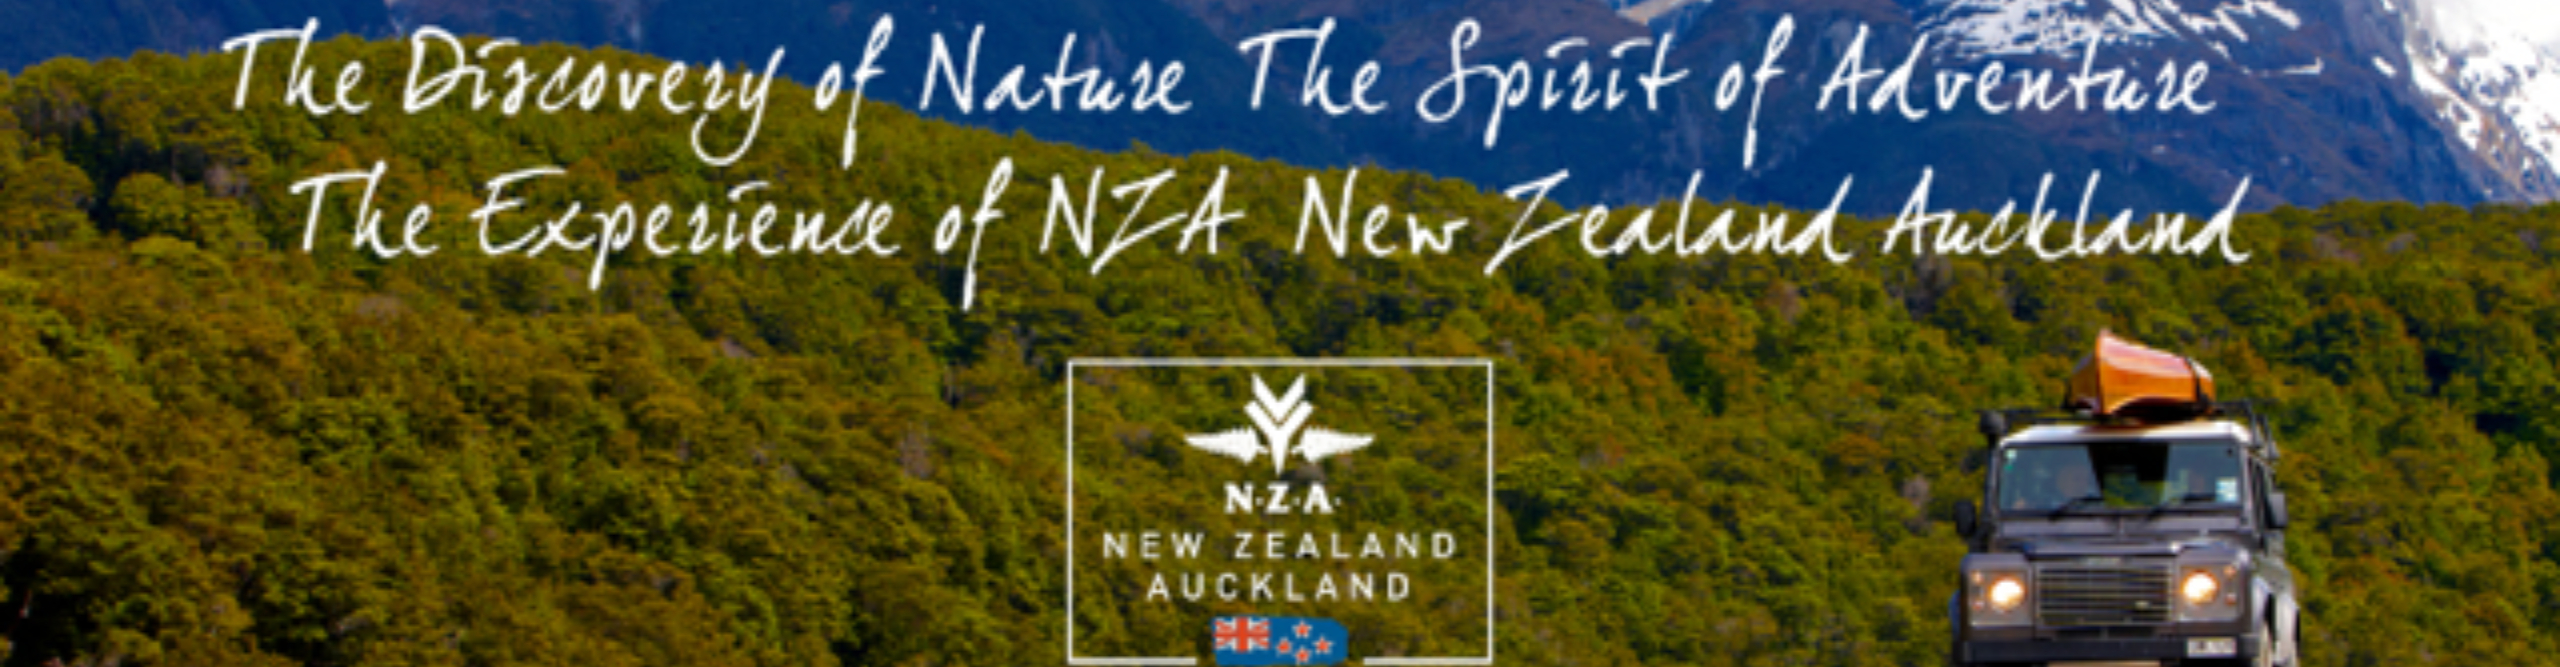 geschiedenis Bewust Vol NZA New Zealand wholesale collection